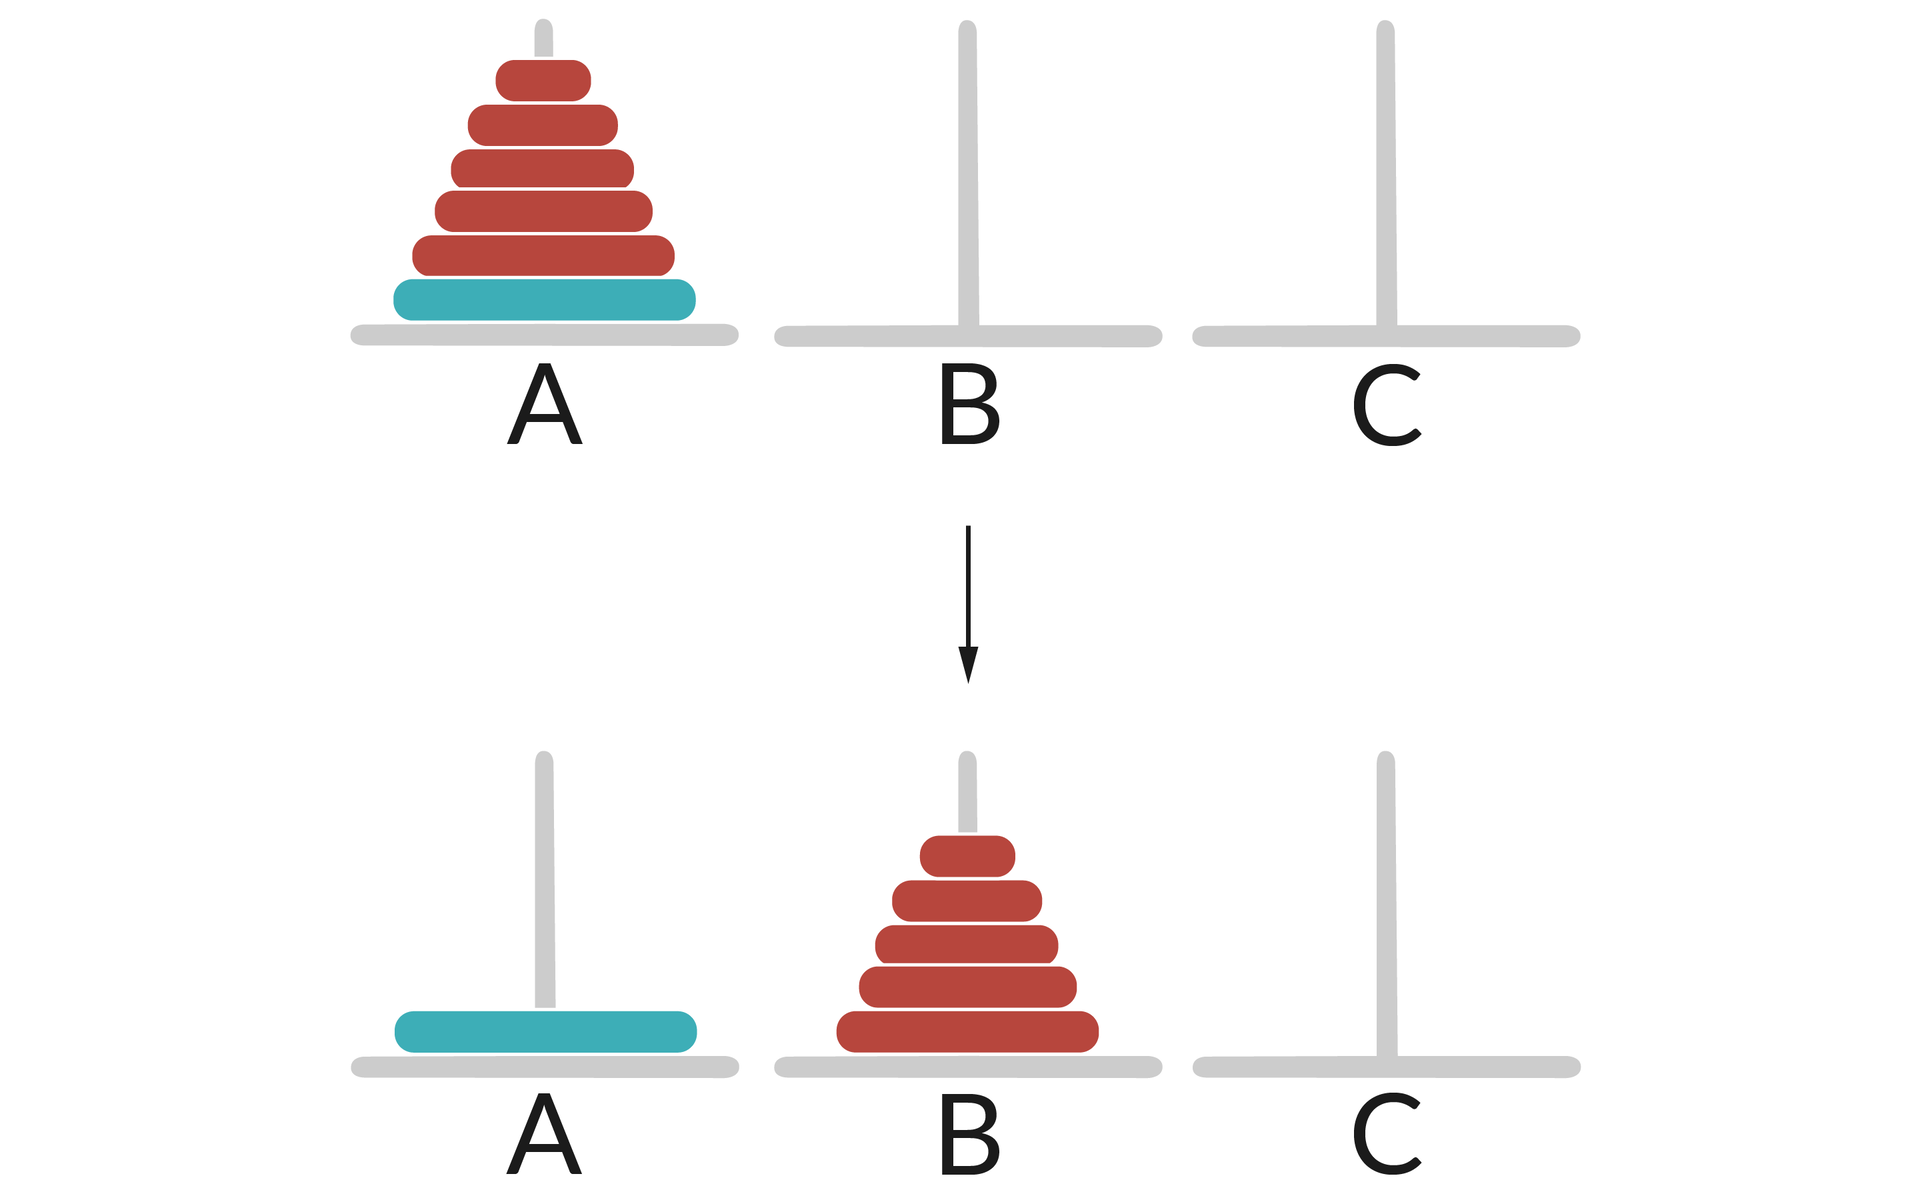 Ilustracja przedstawia dwa rzędy słupków: A, B, C. W pierwszym rzędzie na słupku A umieszczone jest 6 krążków w kolejności od największego do najmniejszego, a słupki B oraz C są puste.  Pierwszy największy krążek w słupku A  jest koloru niebieskiego, a reszta czerwonego  W drugim rzędzie słupków na słupku A znajduje się pojedynczy duży krążek koloru niebieskiego.  W drugim rzędzie na słupku B znajduje się 5 krążków ułożonych w kolejności od największego do najmniejszego koloru czerwonego.  Słupek C jest pusty.